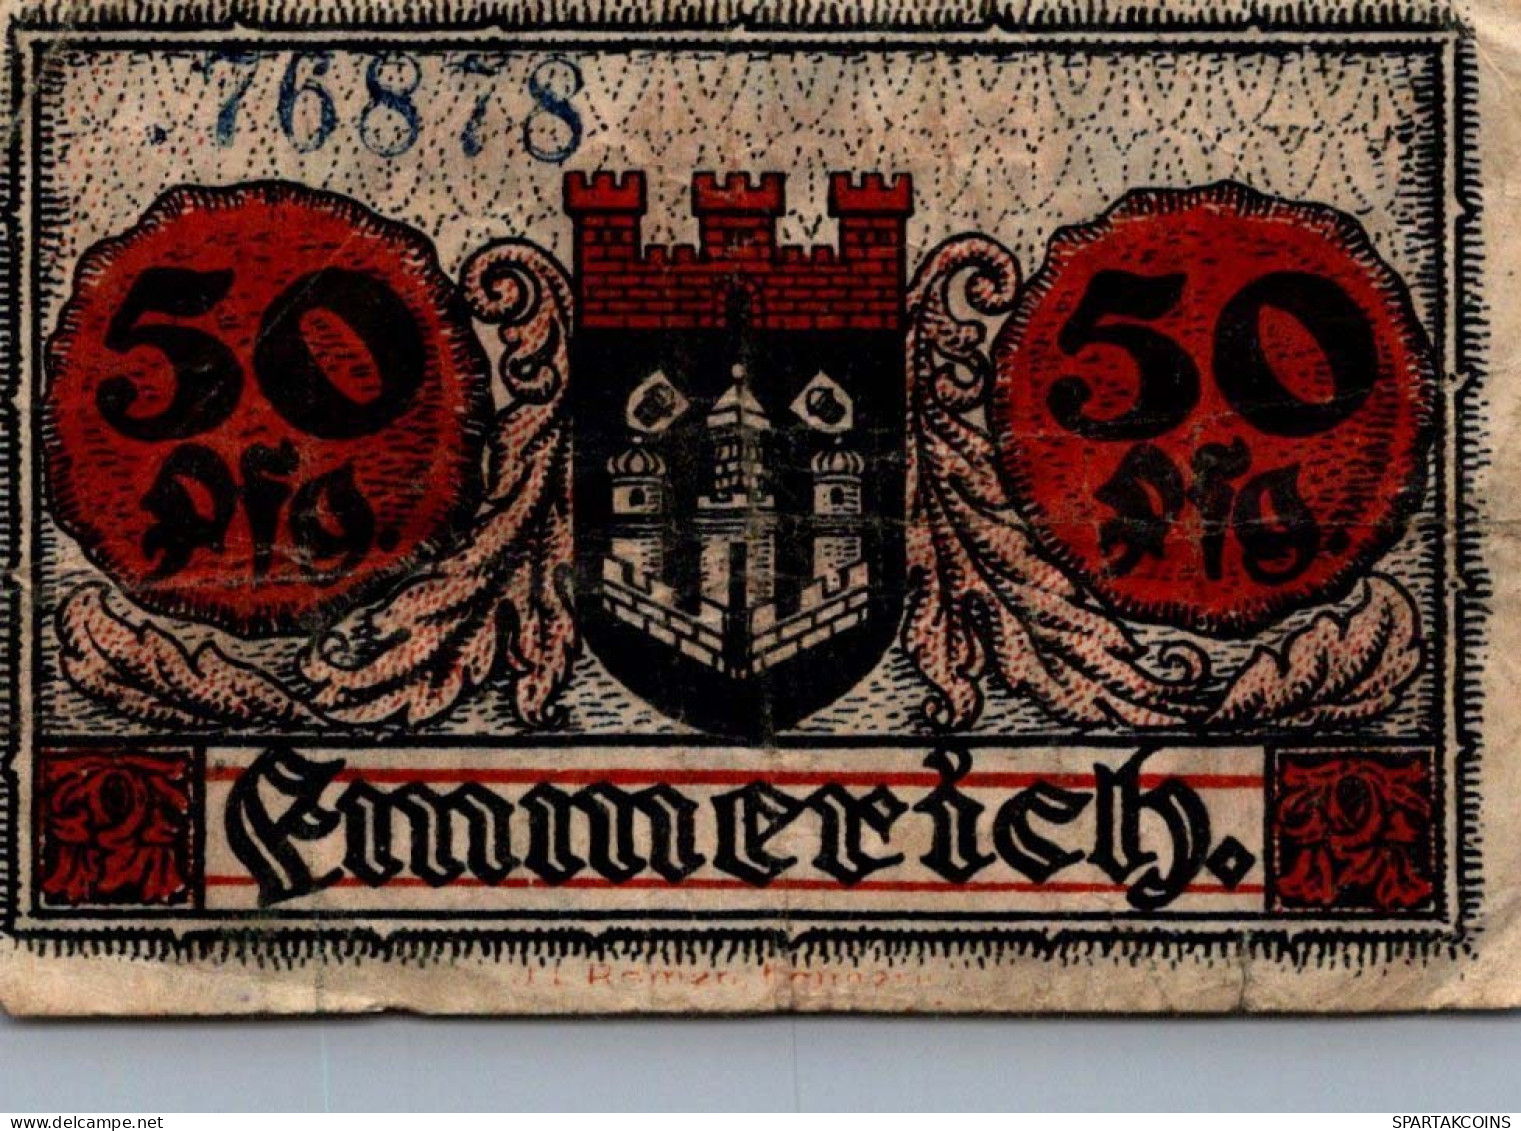 50 PFENNIG 1918 Stadt EMMERICH Rhine DEUTSCHLAND Notgeld Banknote #PG464 - [11] Local Banknote Issues